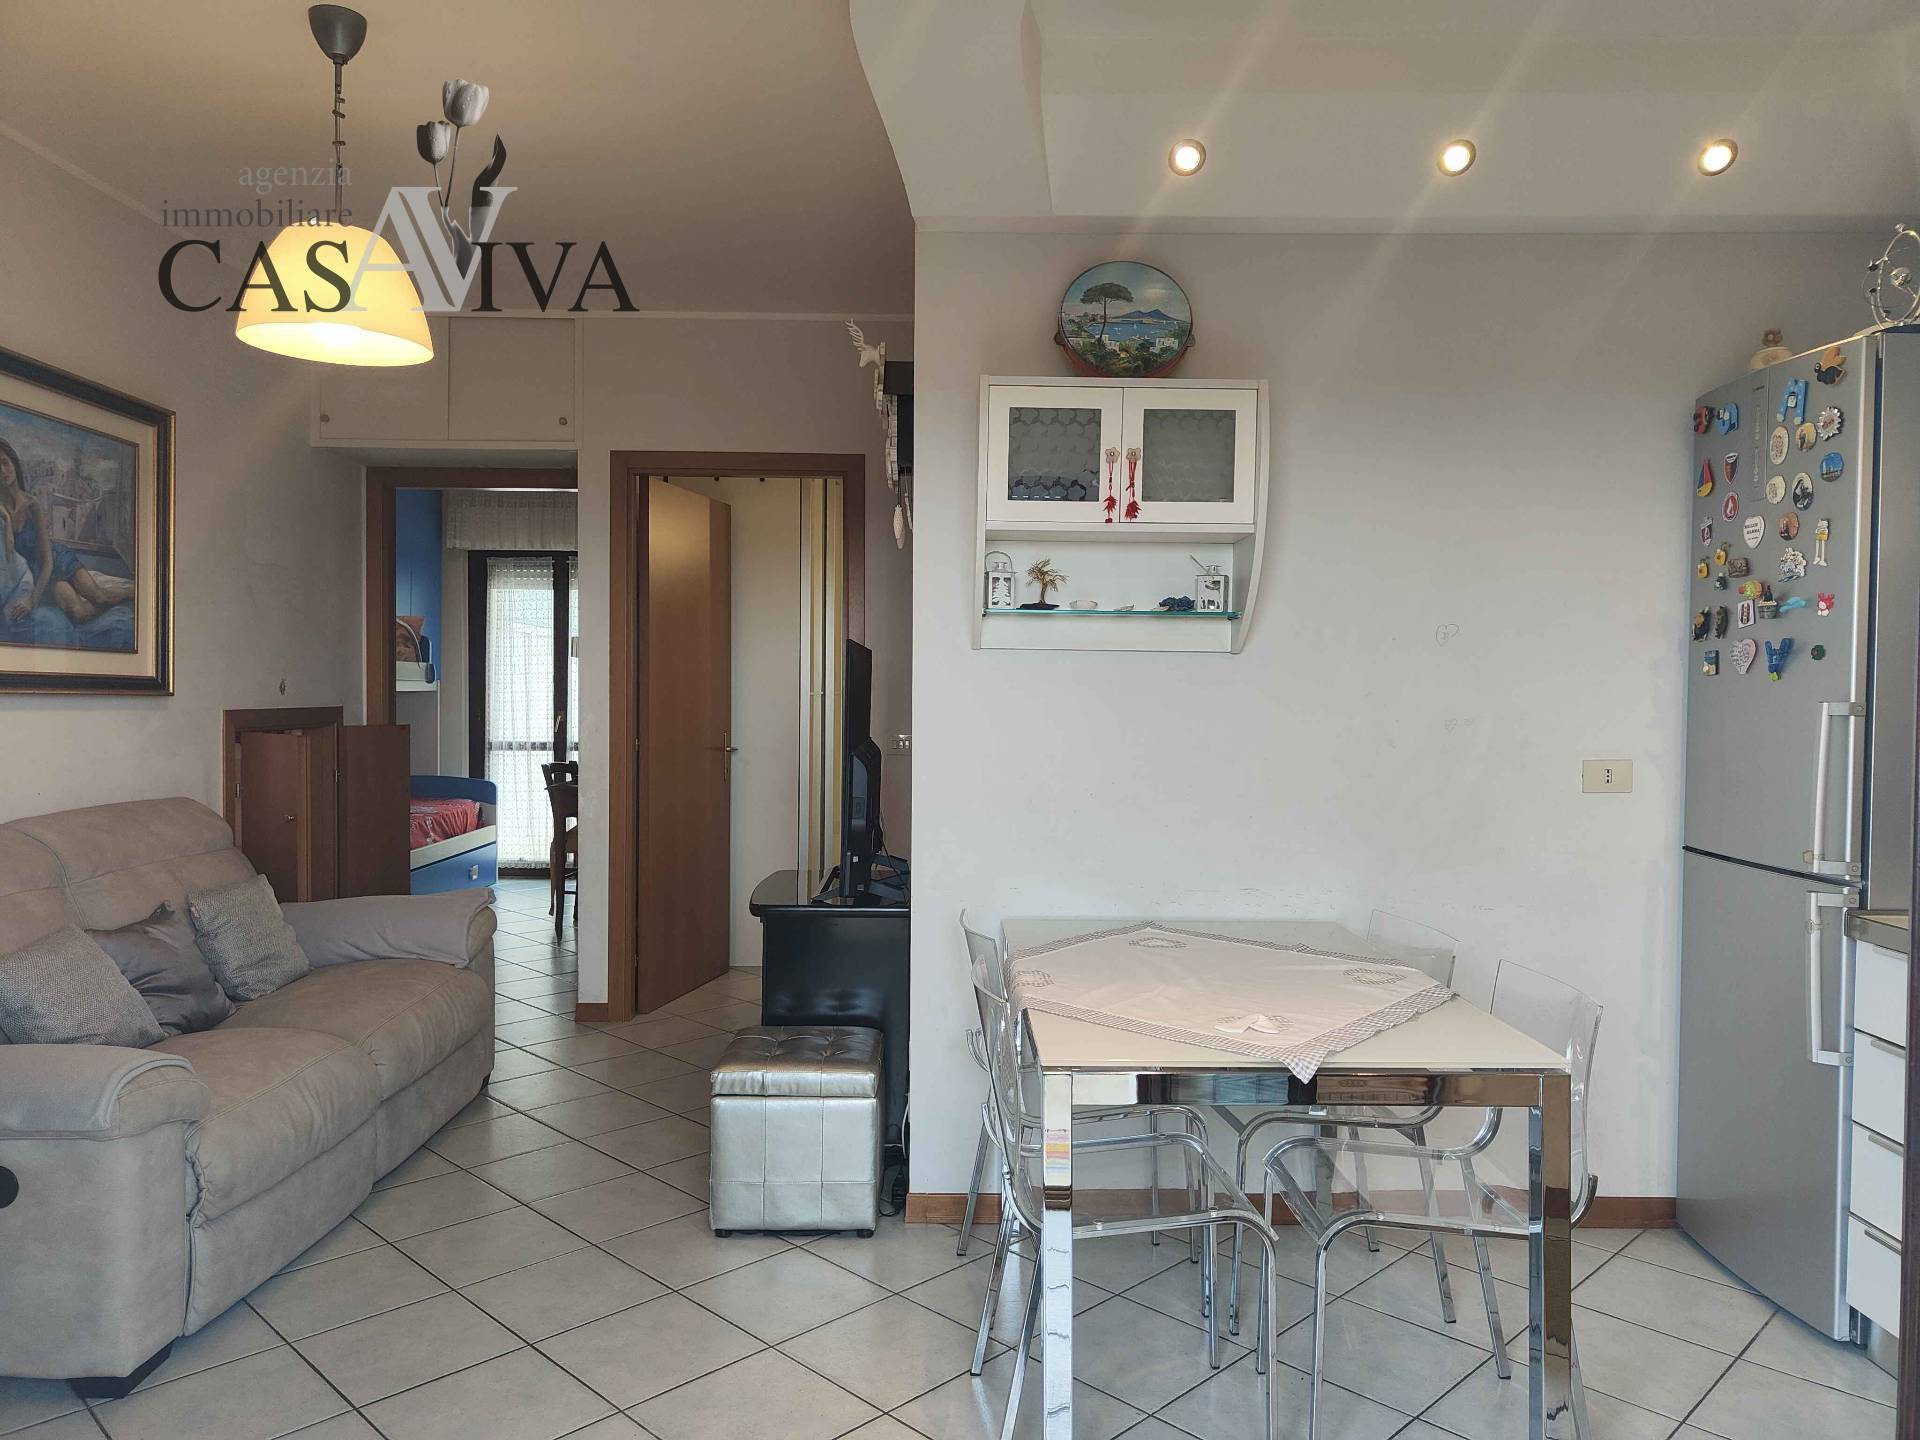 Appartamento in vendita a Acquaviva Picena, 3 locali, zona Località: Panoramica, prezzo € 125.000 | PortaleAgenzieImmobiliari.it